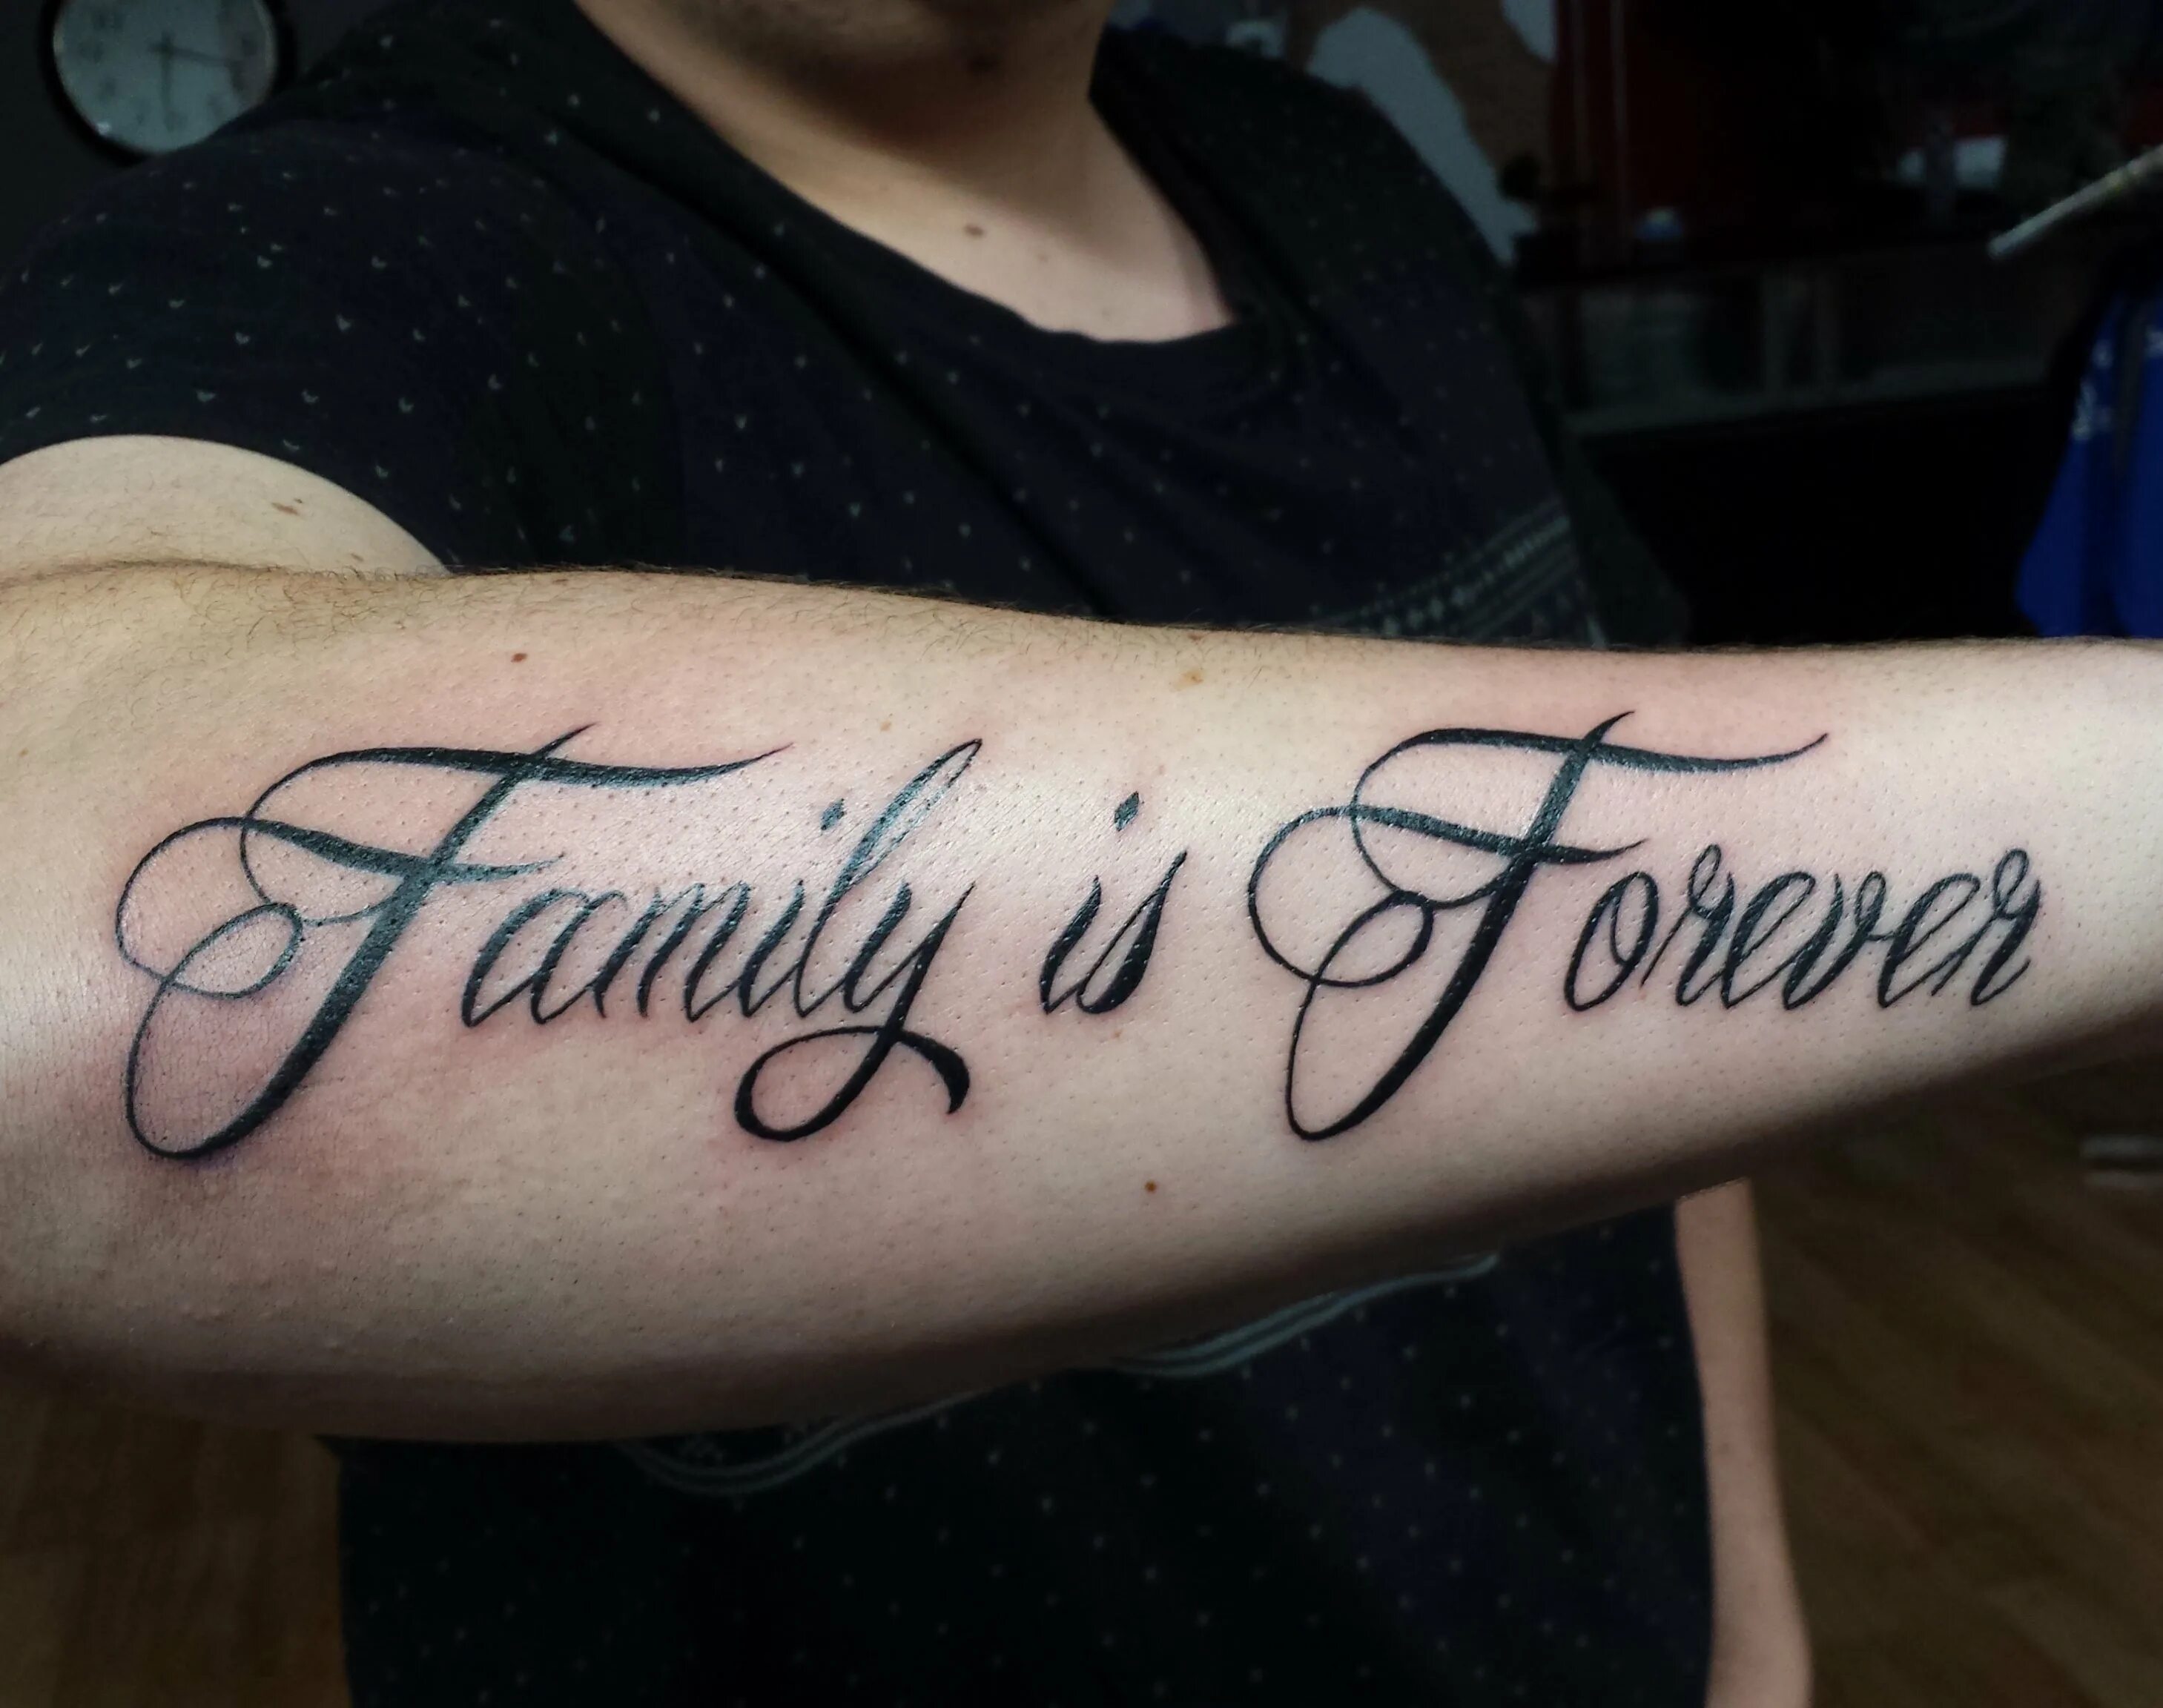 Надпись мои дети моя жизнь. Тату надписи. Семья на латыни тату. Моя семья моя крепость на латыни. Тату надпись на руке.